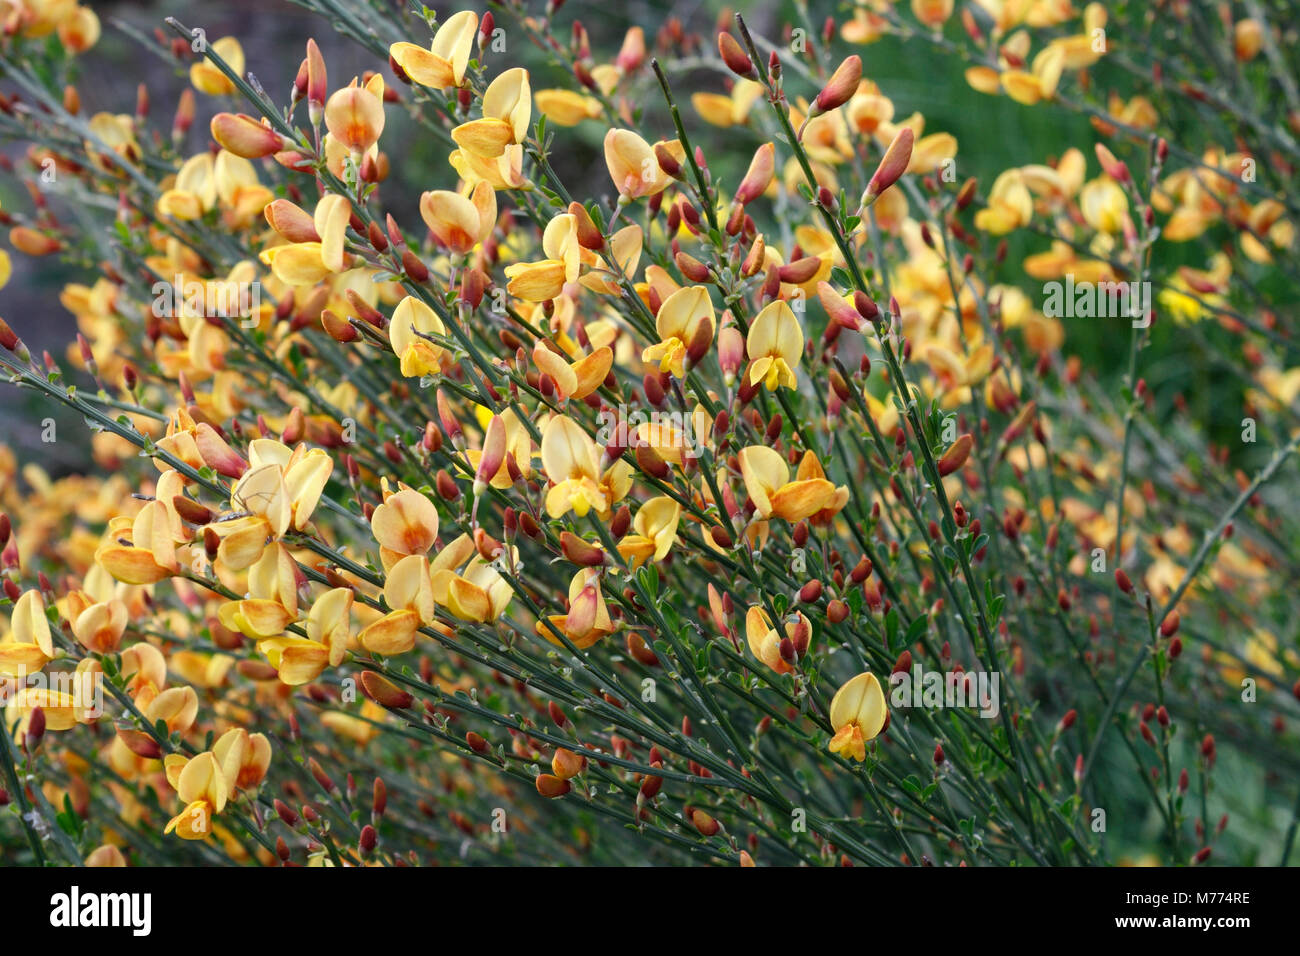 Broom flowers in Bloom, Cytisus Stock Photo